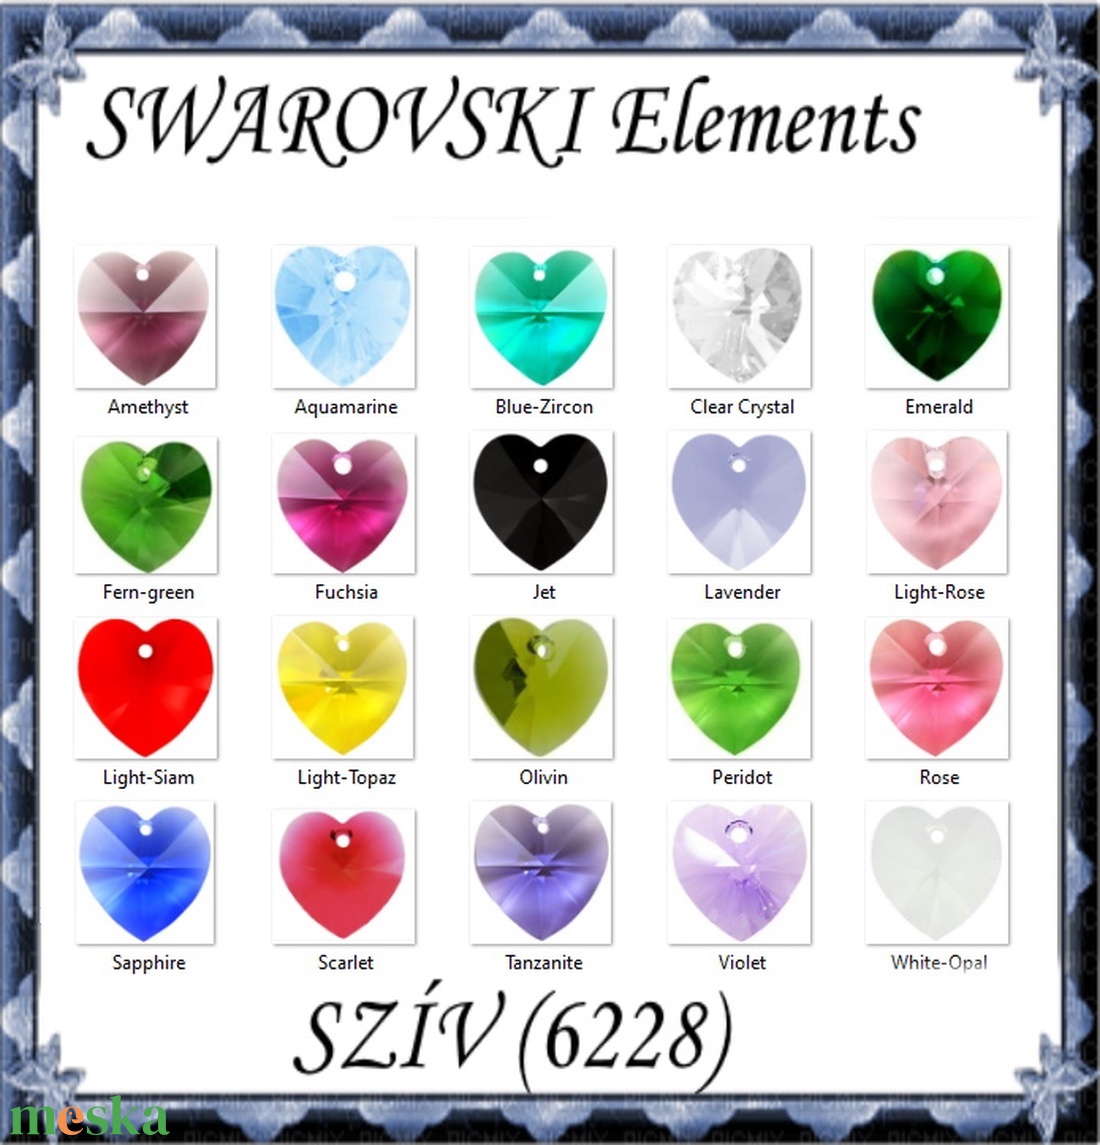 Swarovski kristály medál: SWM szív (6228) 14mm-es több színben - gyöngy, ékszerkellék - swarovski kristályok - Meska.hu